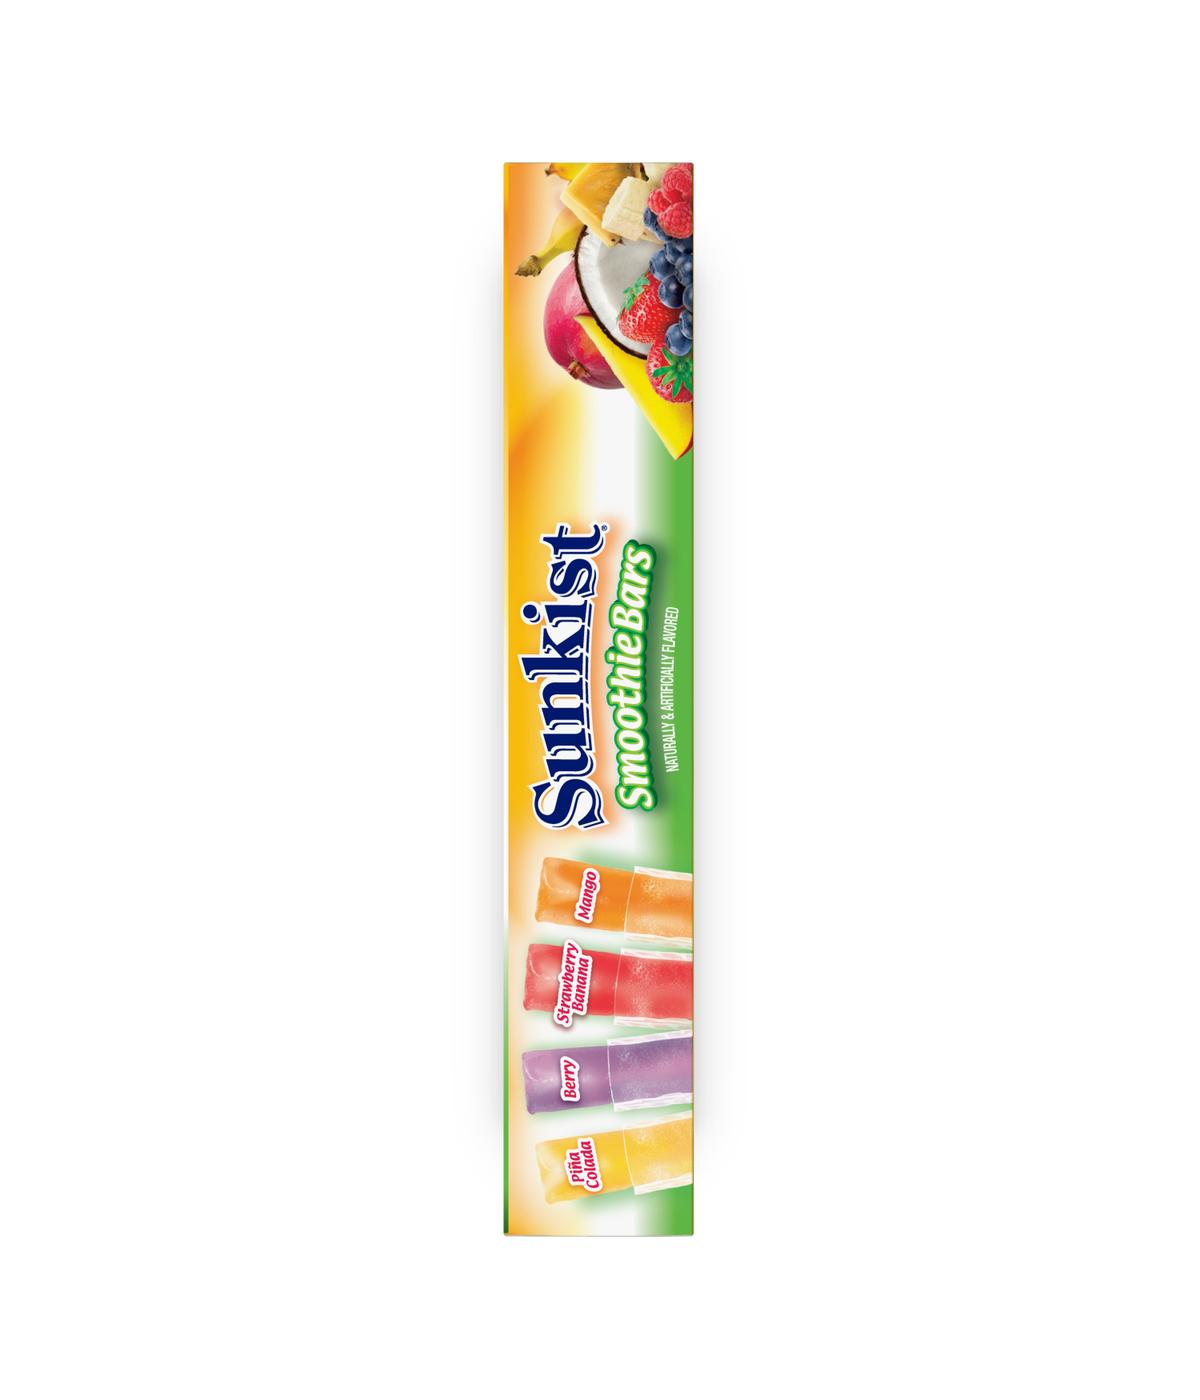 Sunkist Smoothie Freezer Bars; image 3 of 4